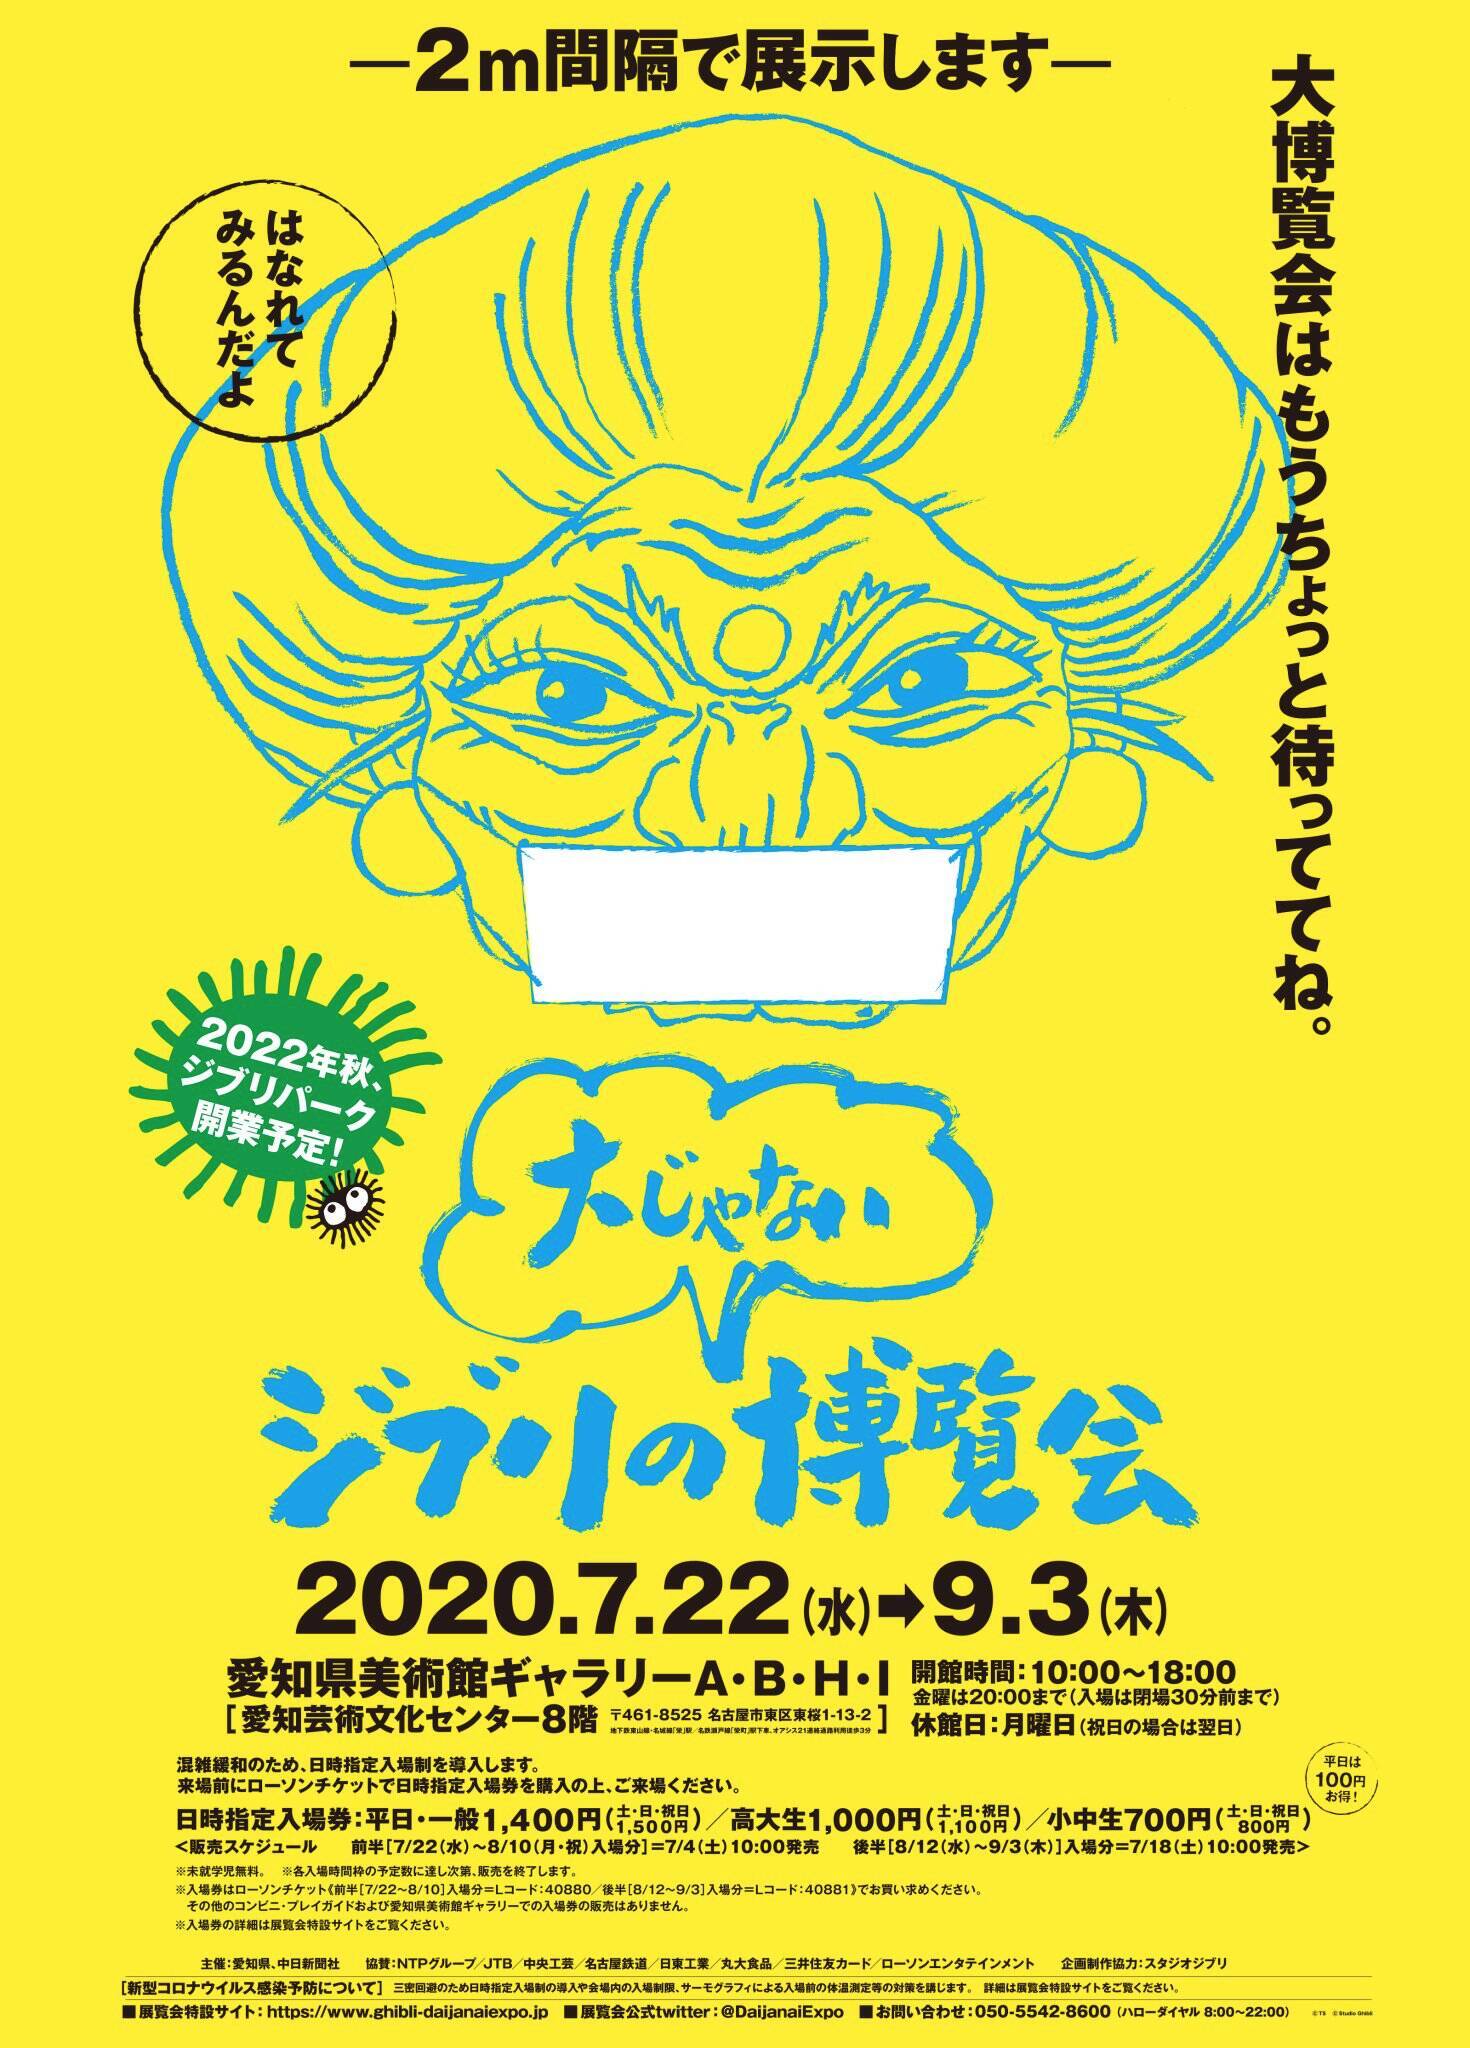 ジブリの 大じゃない 博覧会 愛知にて開催決定 スタジオジブリの 過去から未来 を体感 年7月3日 エキサイトニュース